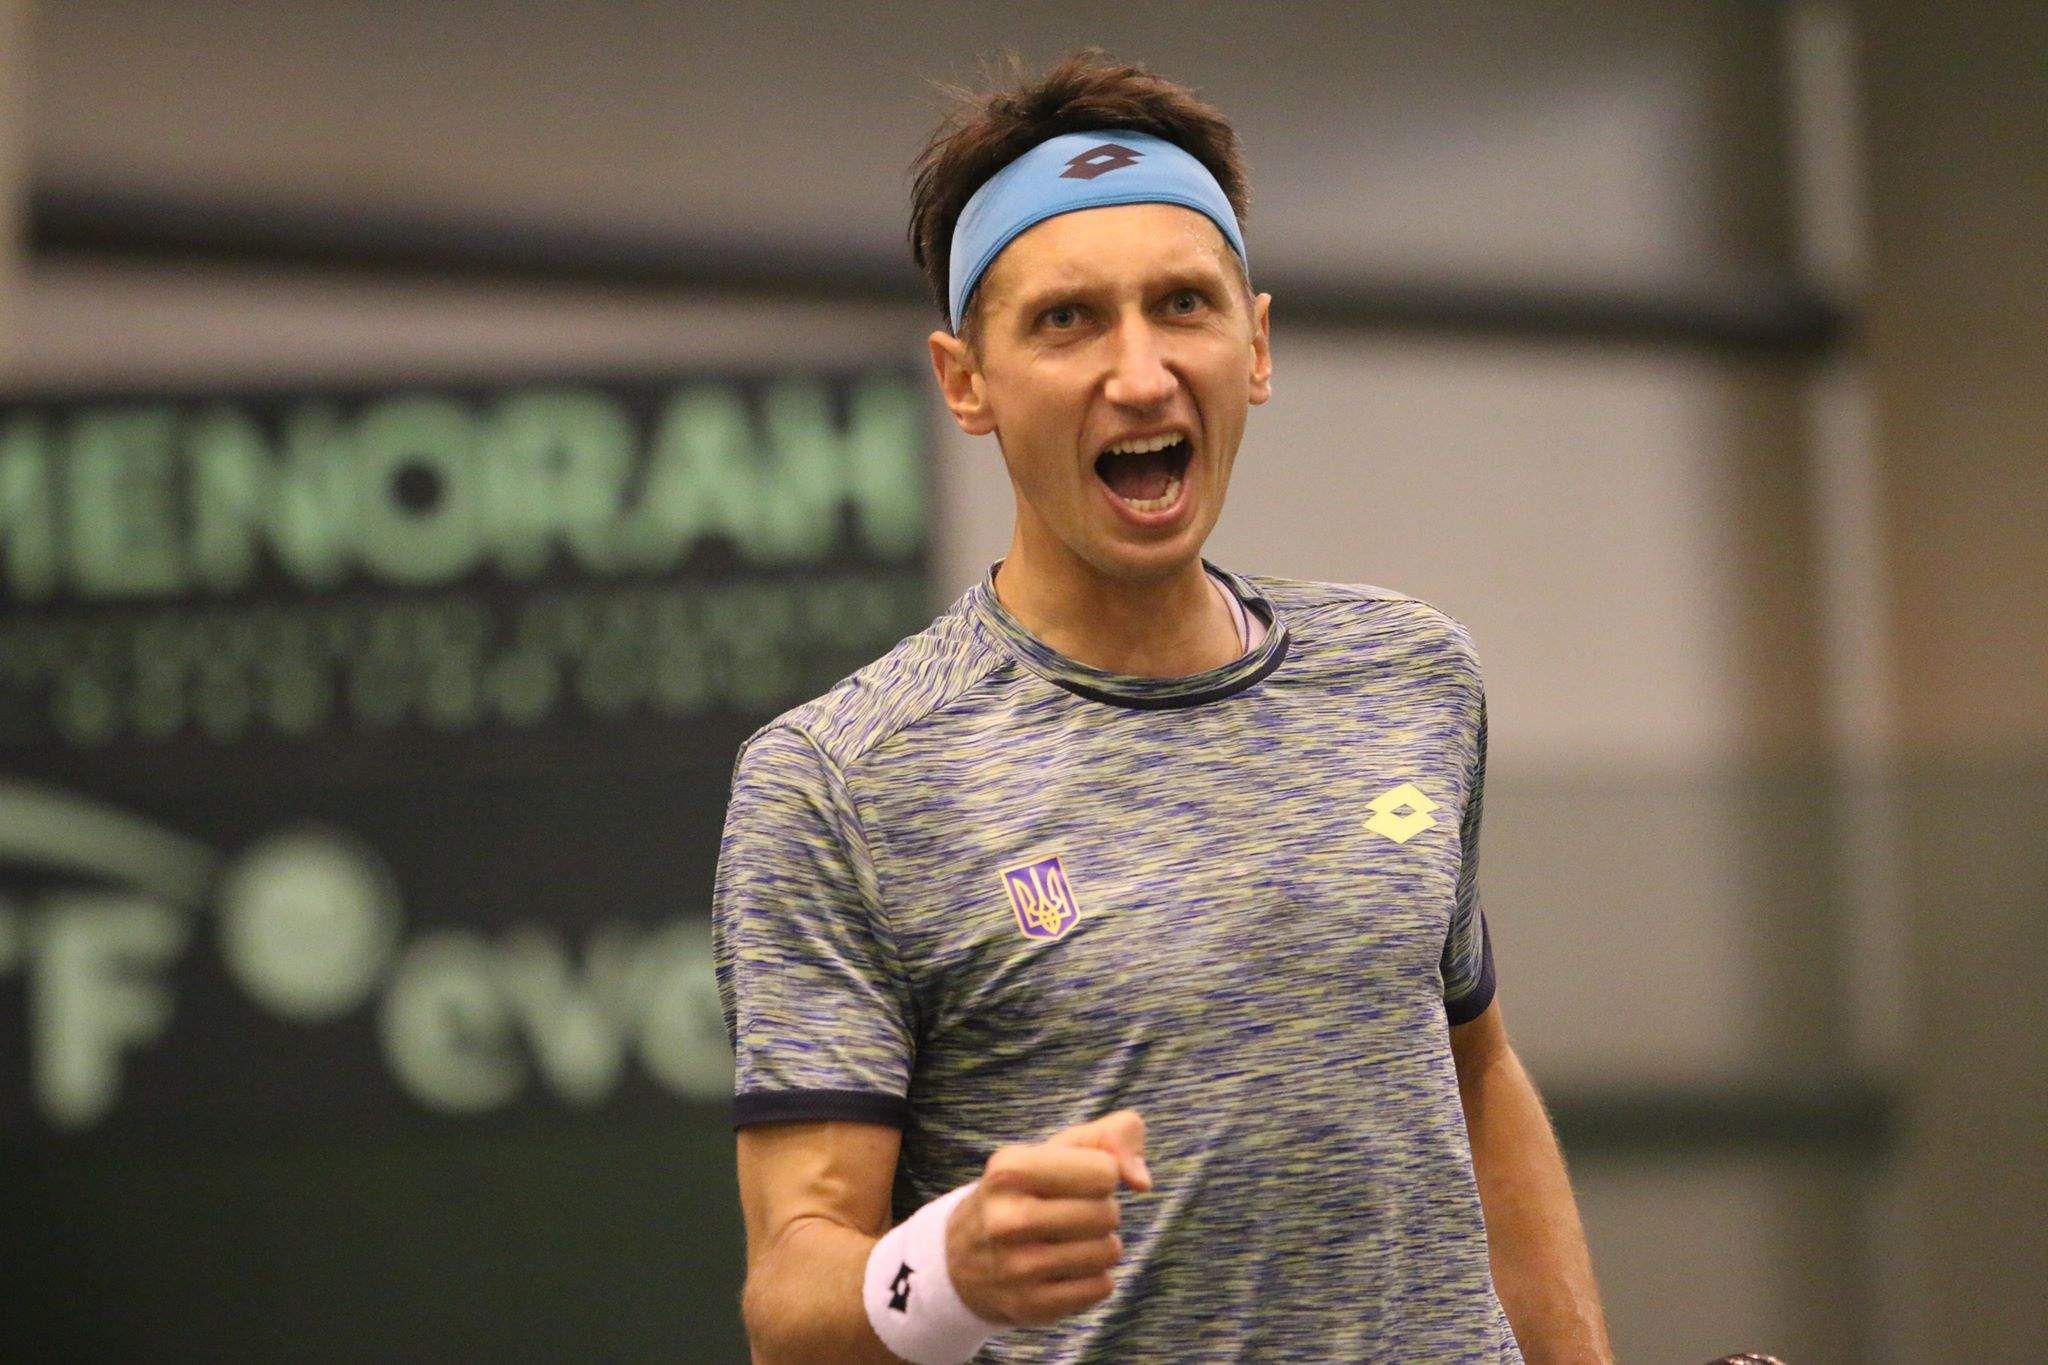 Стаховский во второй раз в сезоне вышел в четвертьфинал турнира серии ATP